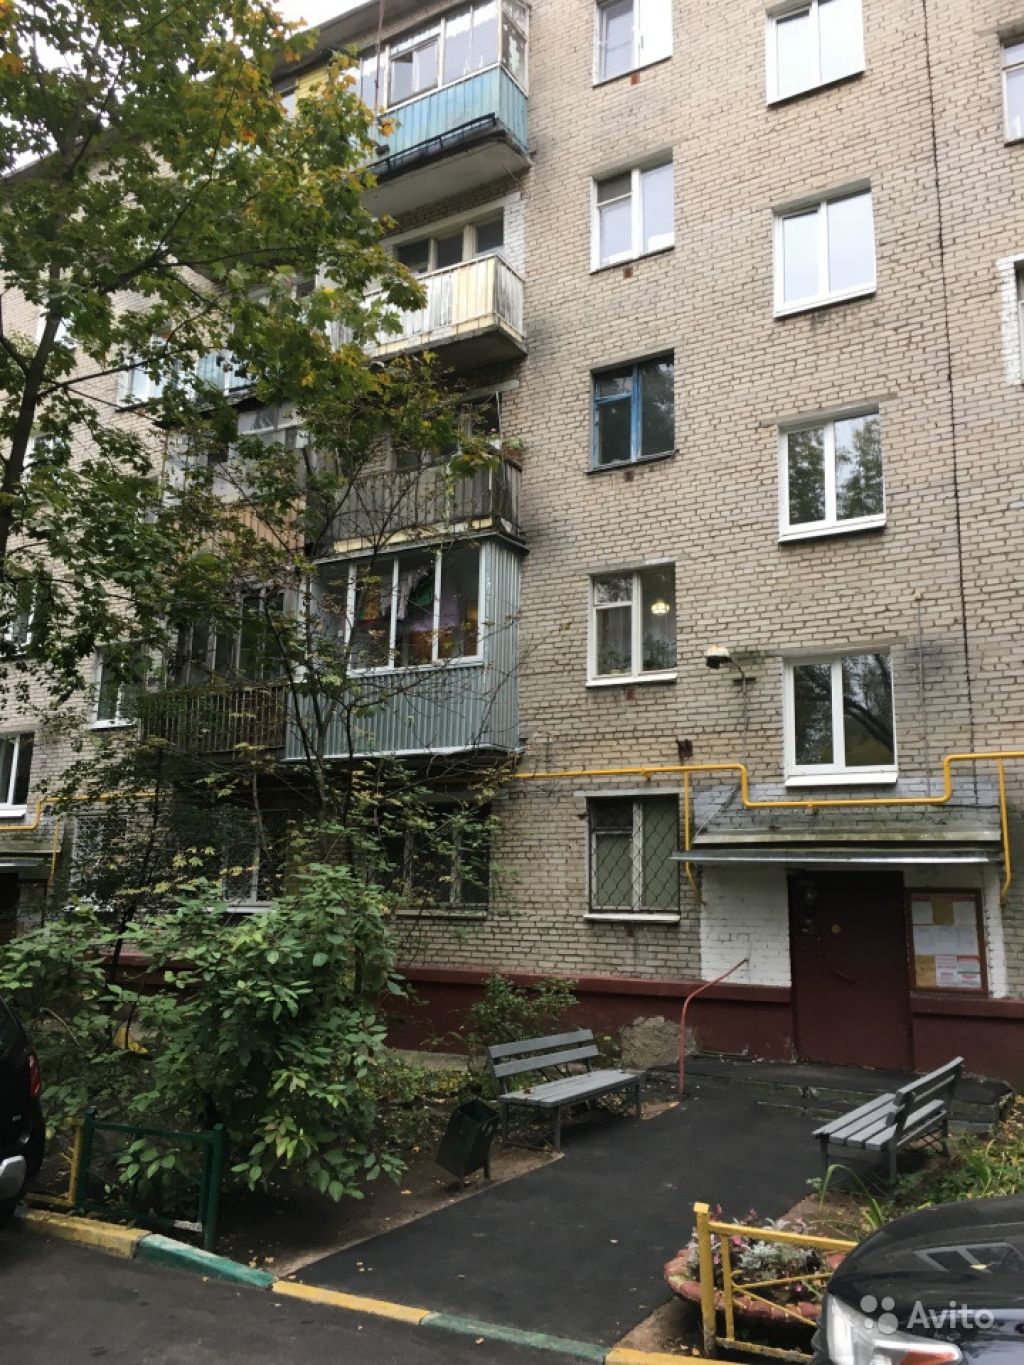 Сдам квартиру 2-к квартира 44.3 м² на 1 этаже 5-этажного кирпичного дома в Москве. Фото 1